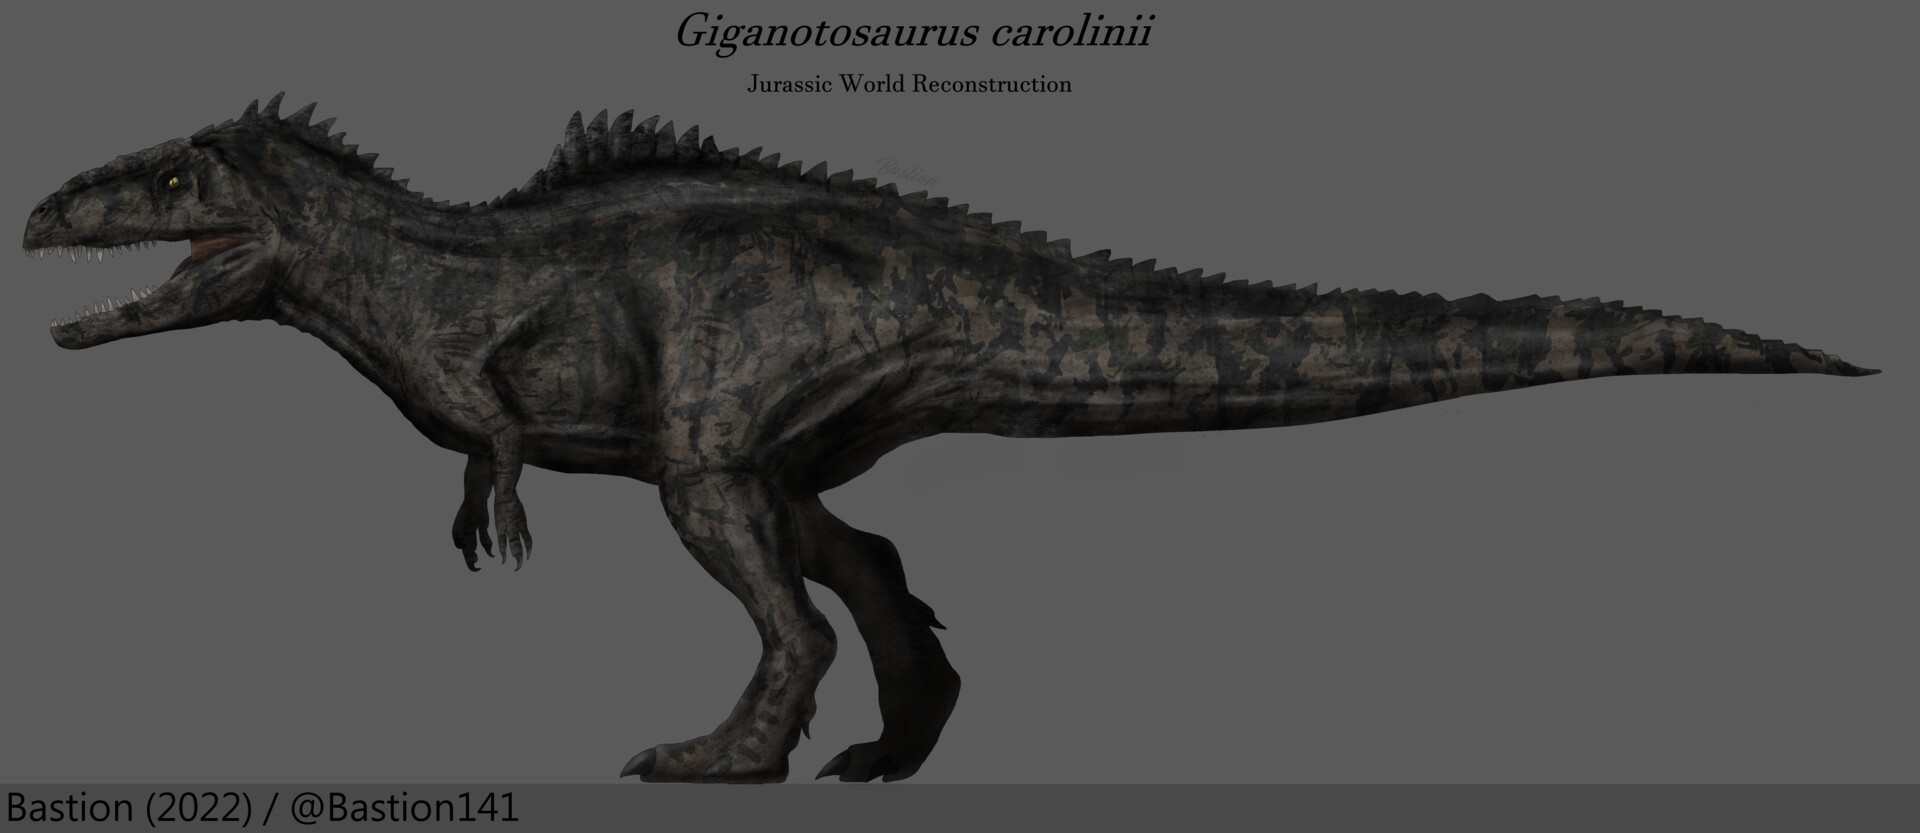 Гигантозавр мир Юрского периода 3 господство